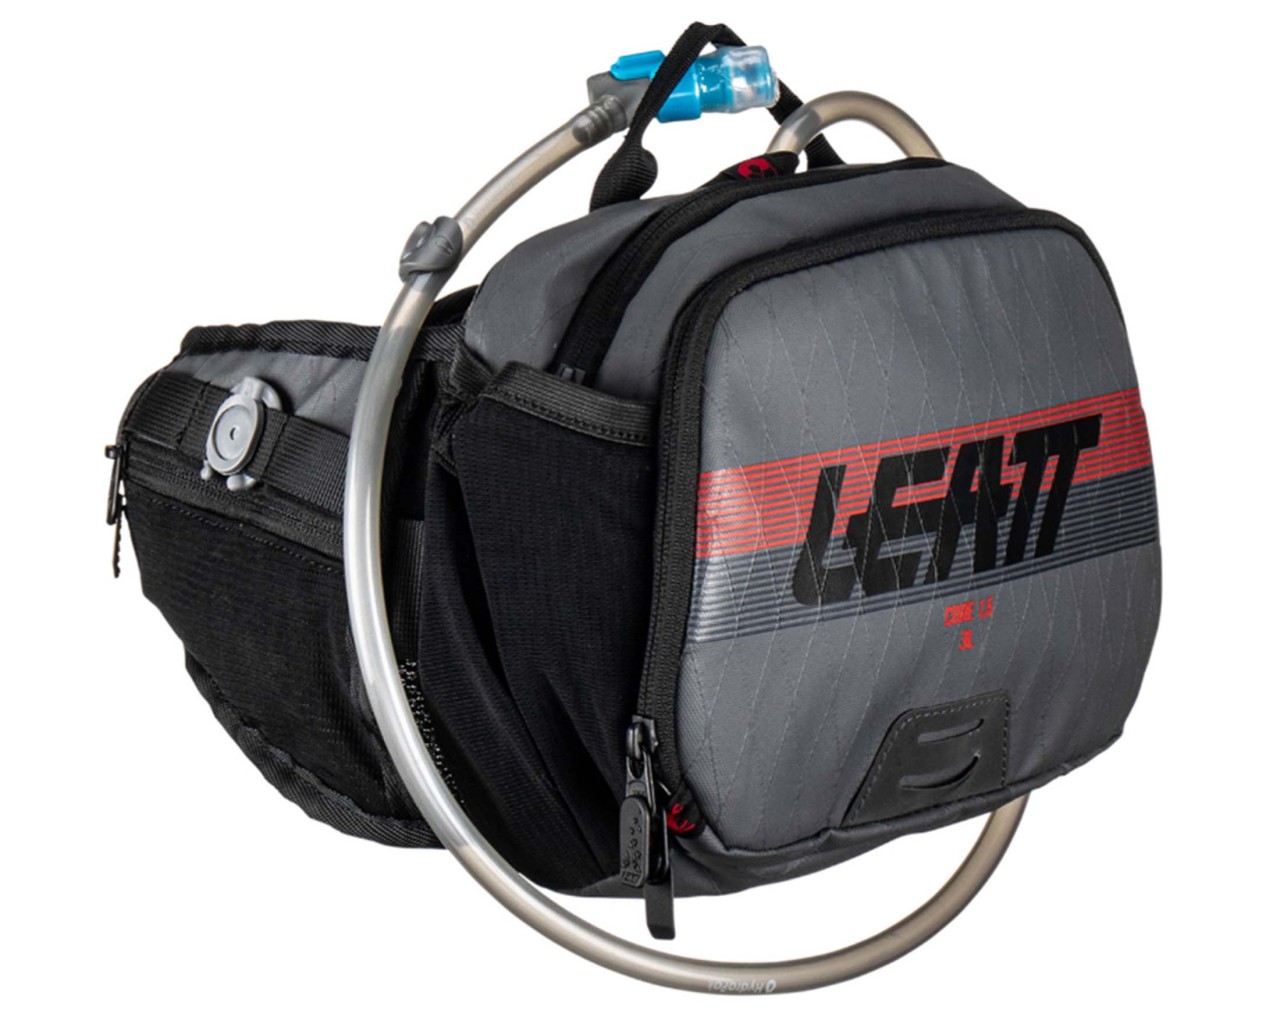 Leatt Hydration Core 1.5 Hip Pack- 4.5 Liter Fahrrad Hüfttasche | graphite